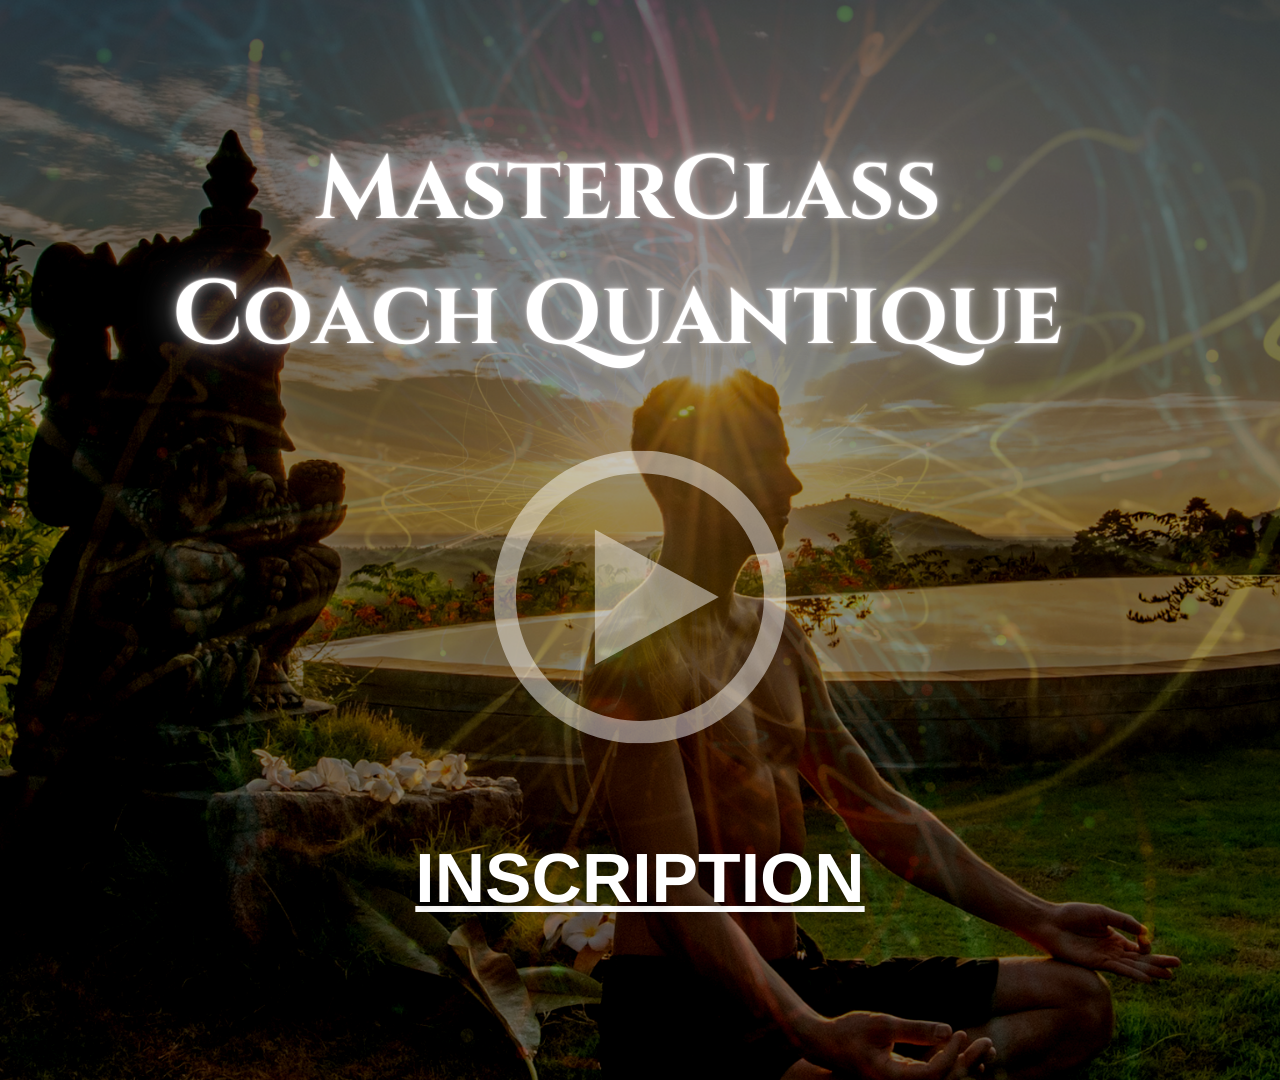 Masterclass coach quantique, formation pour comprendre ses capacités en énergétique, spiritualité, et mondes quantiques